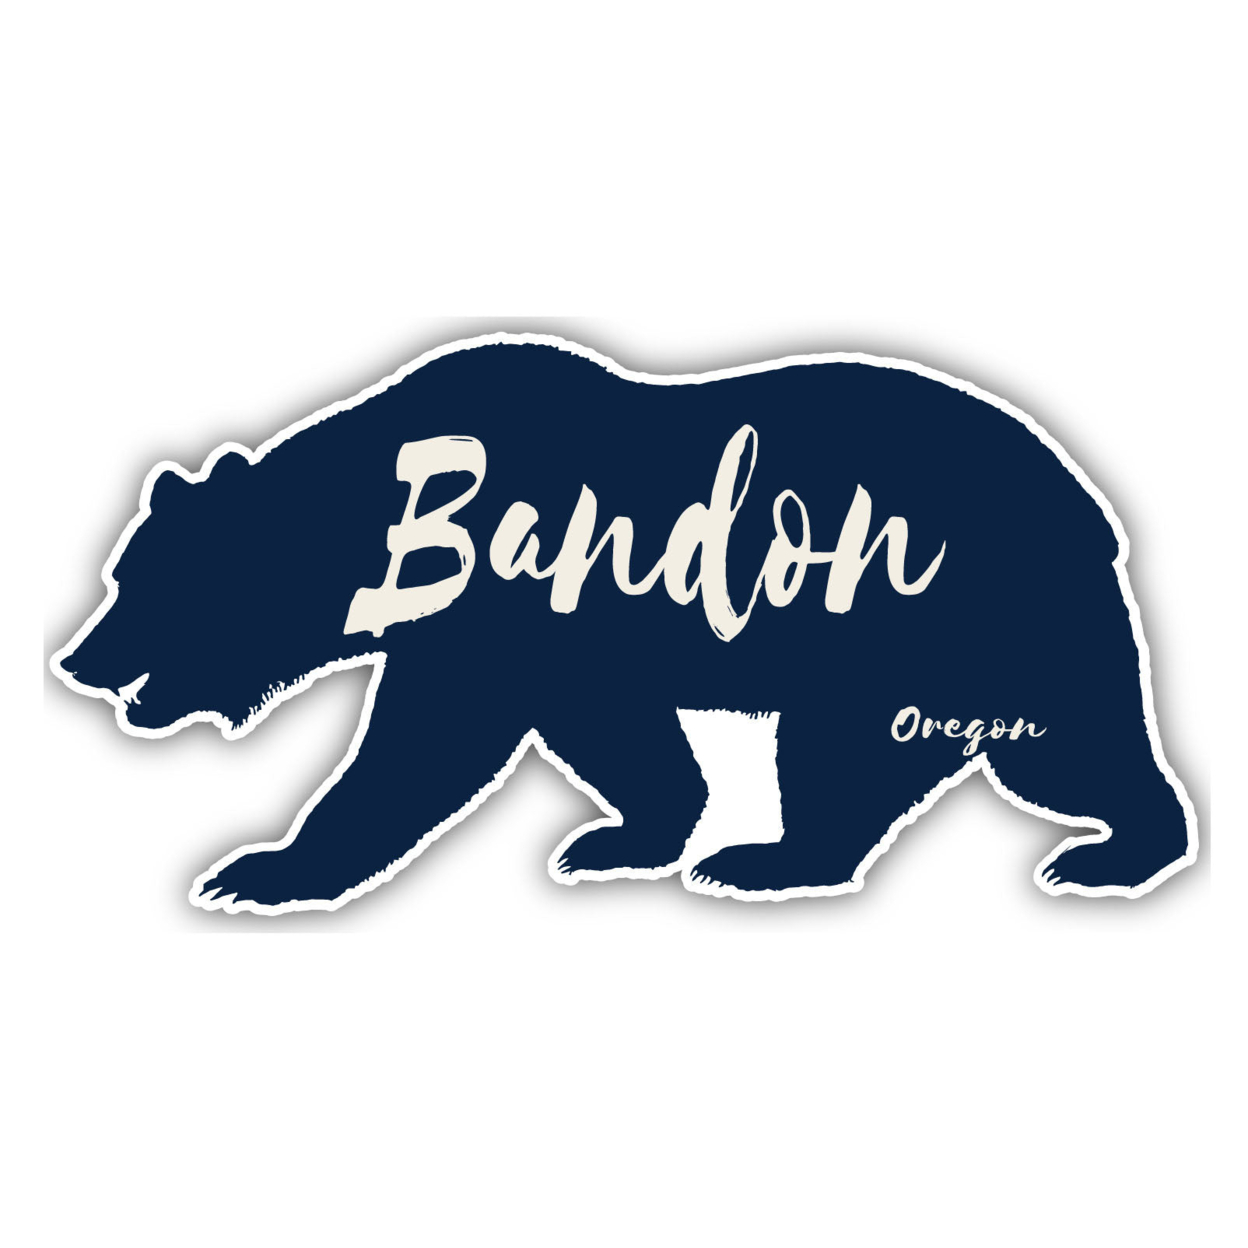 Bandon Oregon Souvenir Decorative Stickers (Choose Theme And Size) - Single Unit, 6-Inch, Tent